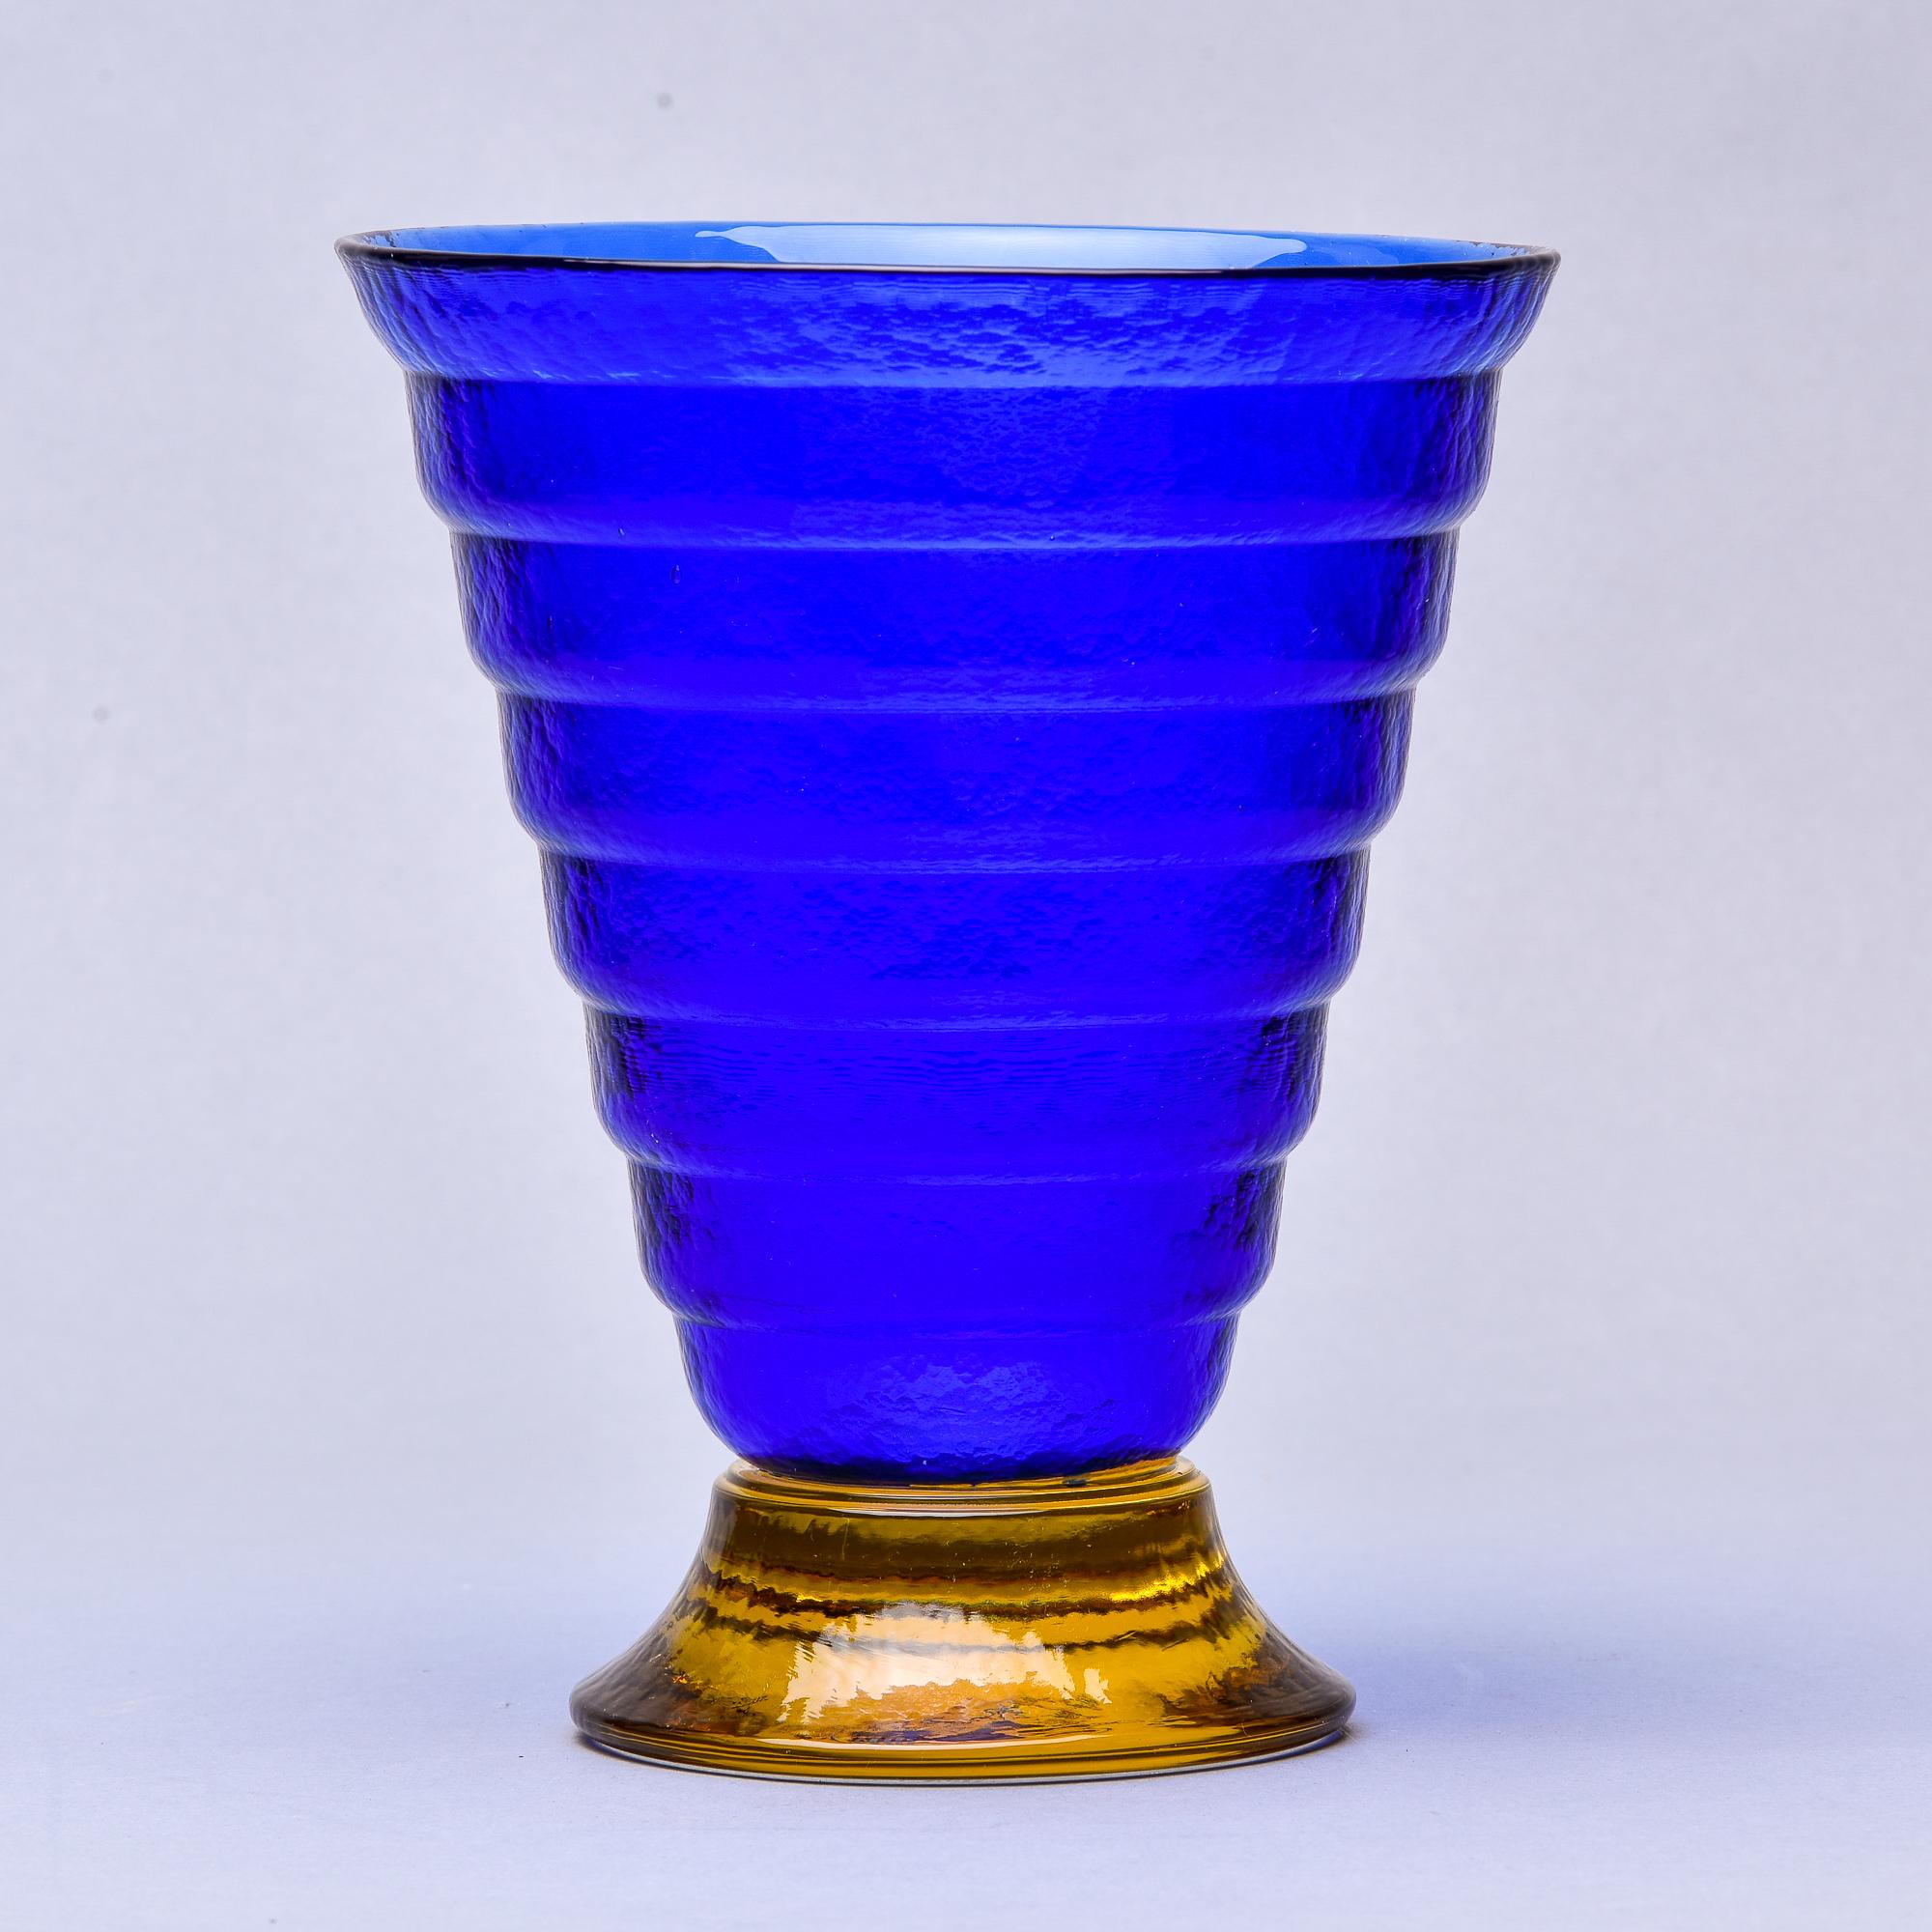 Tiefblaue Vase aus Muranoglas mit goldenem Sockel.

Diese Vase aus Muranoglas aus den 1960er Jahren wurde in Italien gefunden. Sie hat einen satten, schweren, blauen, ausgestellten und gerippten Körper auf einem Sockel in kontrastierendem Gold.